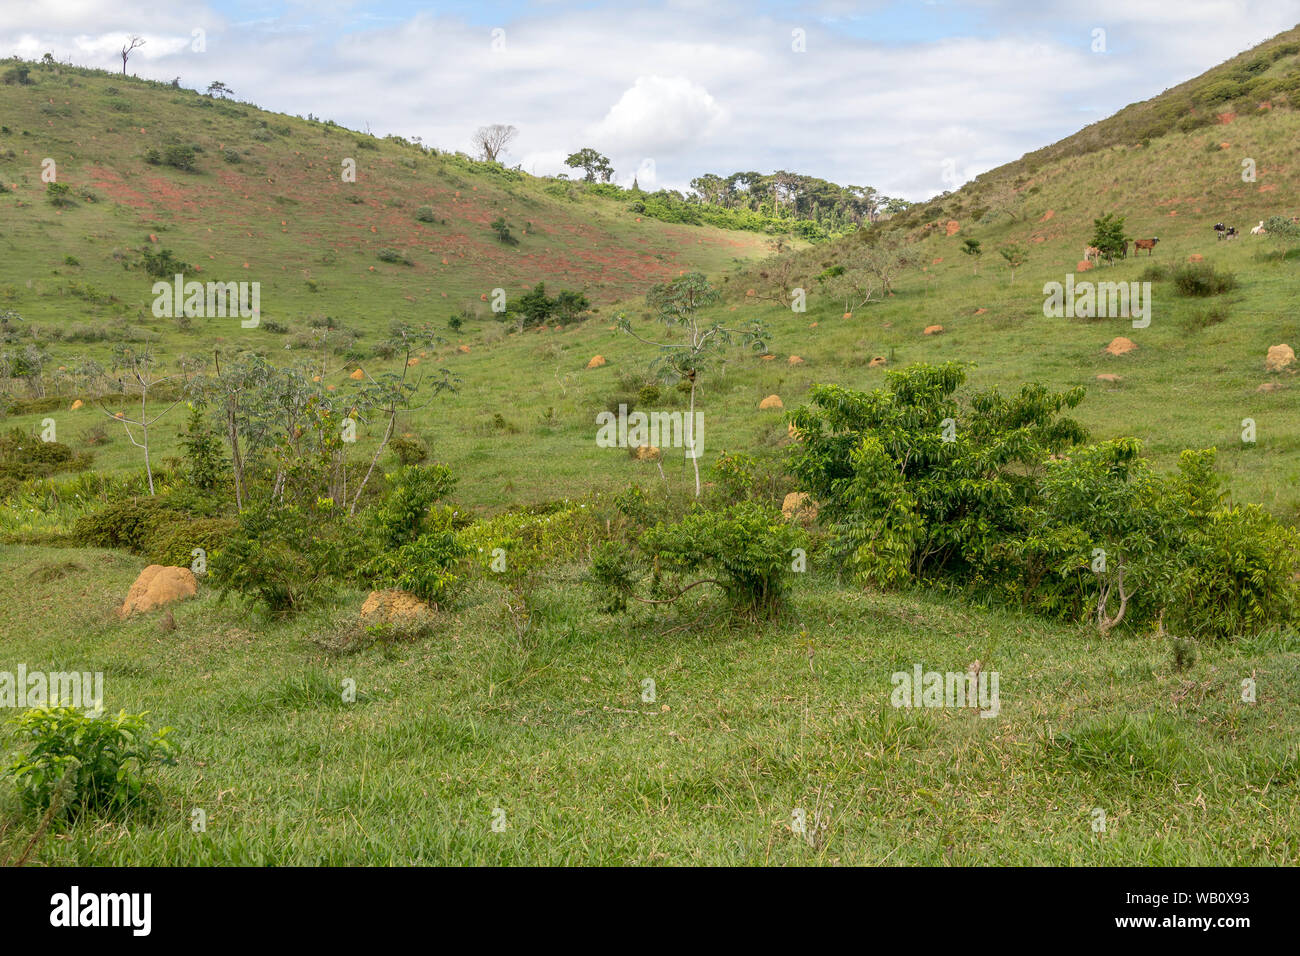 Paisaje de una granja en el estado de Minas Gerais, Brasil. El suelo parece no cultivadas. Foto de stock